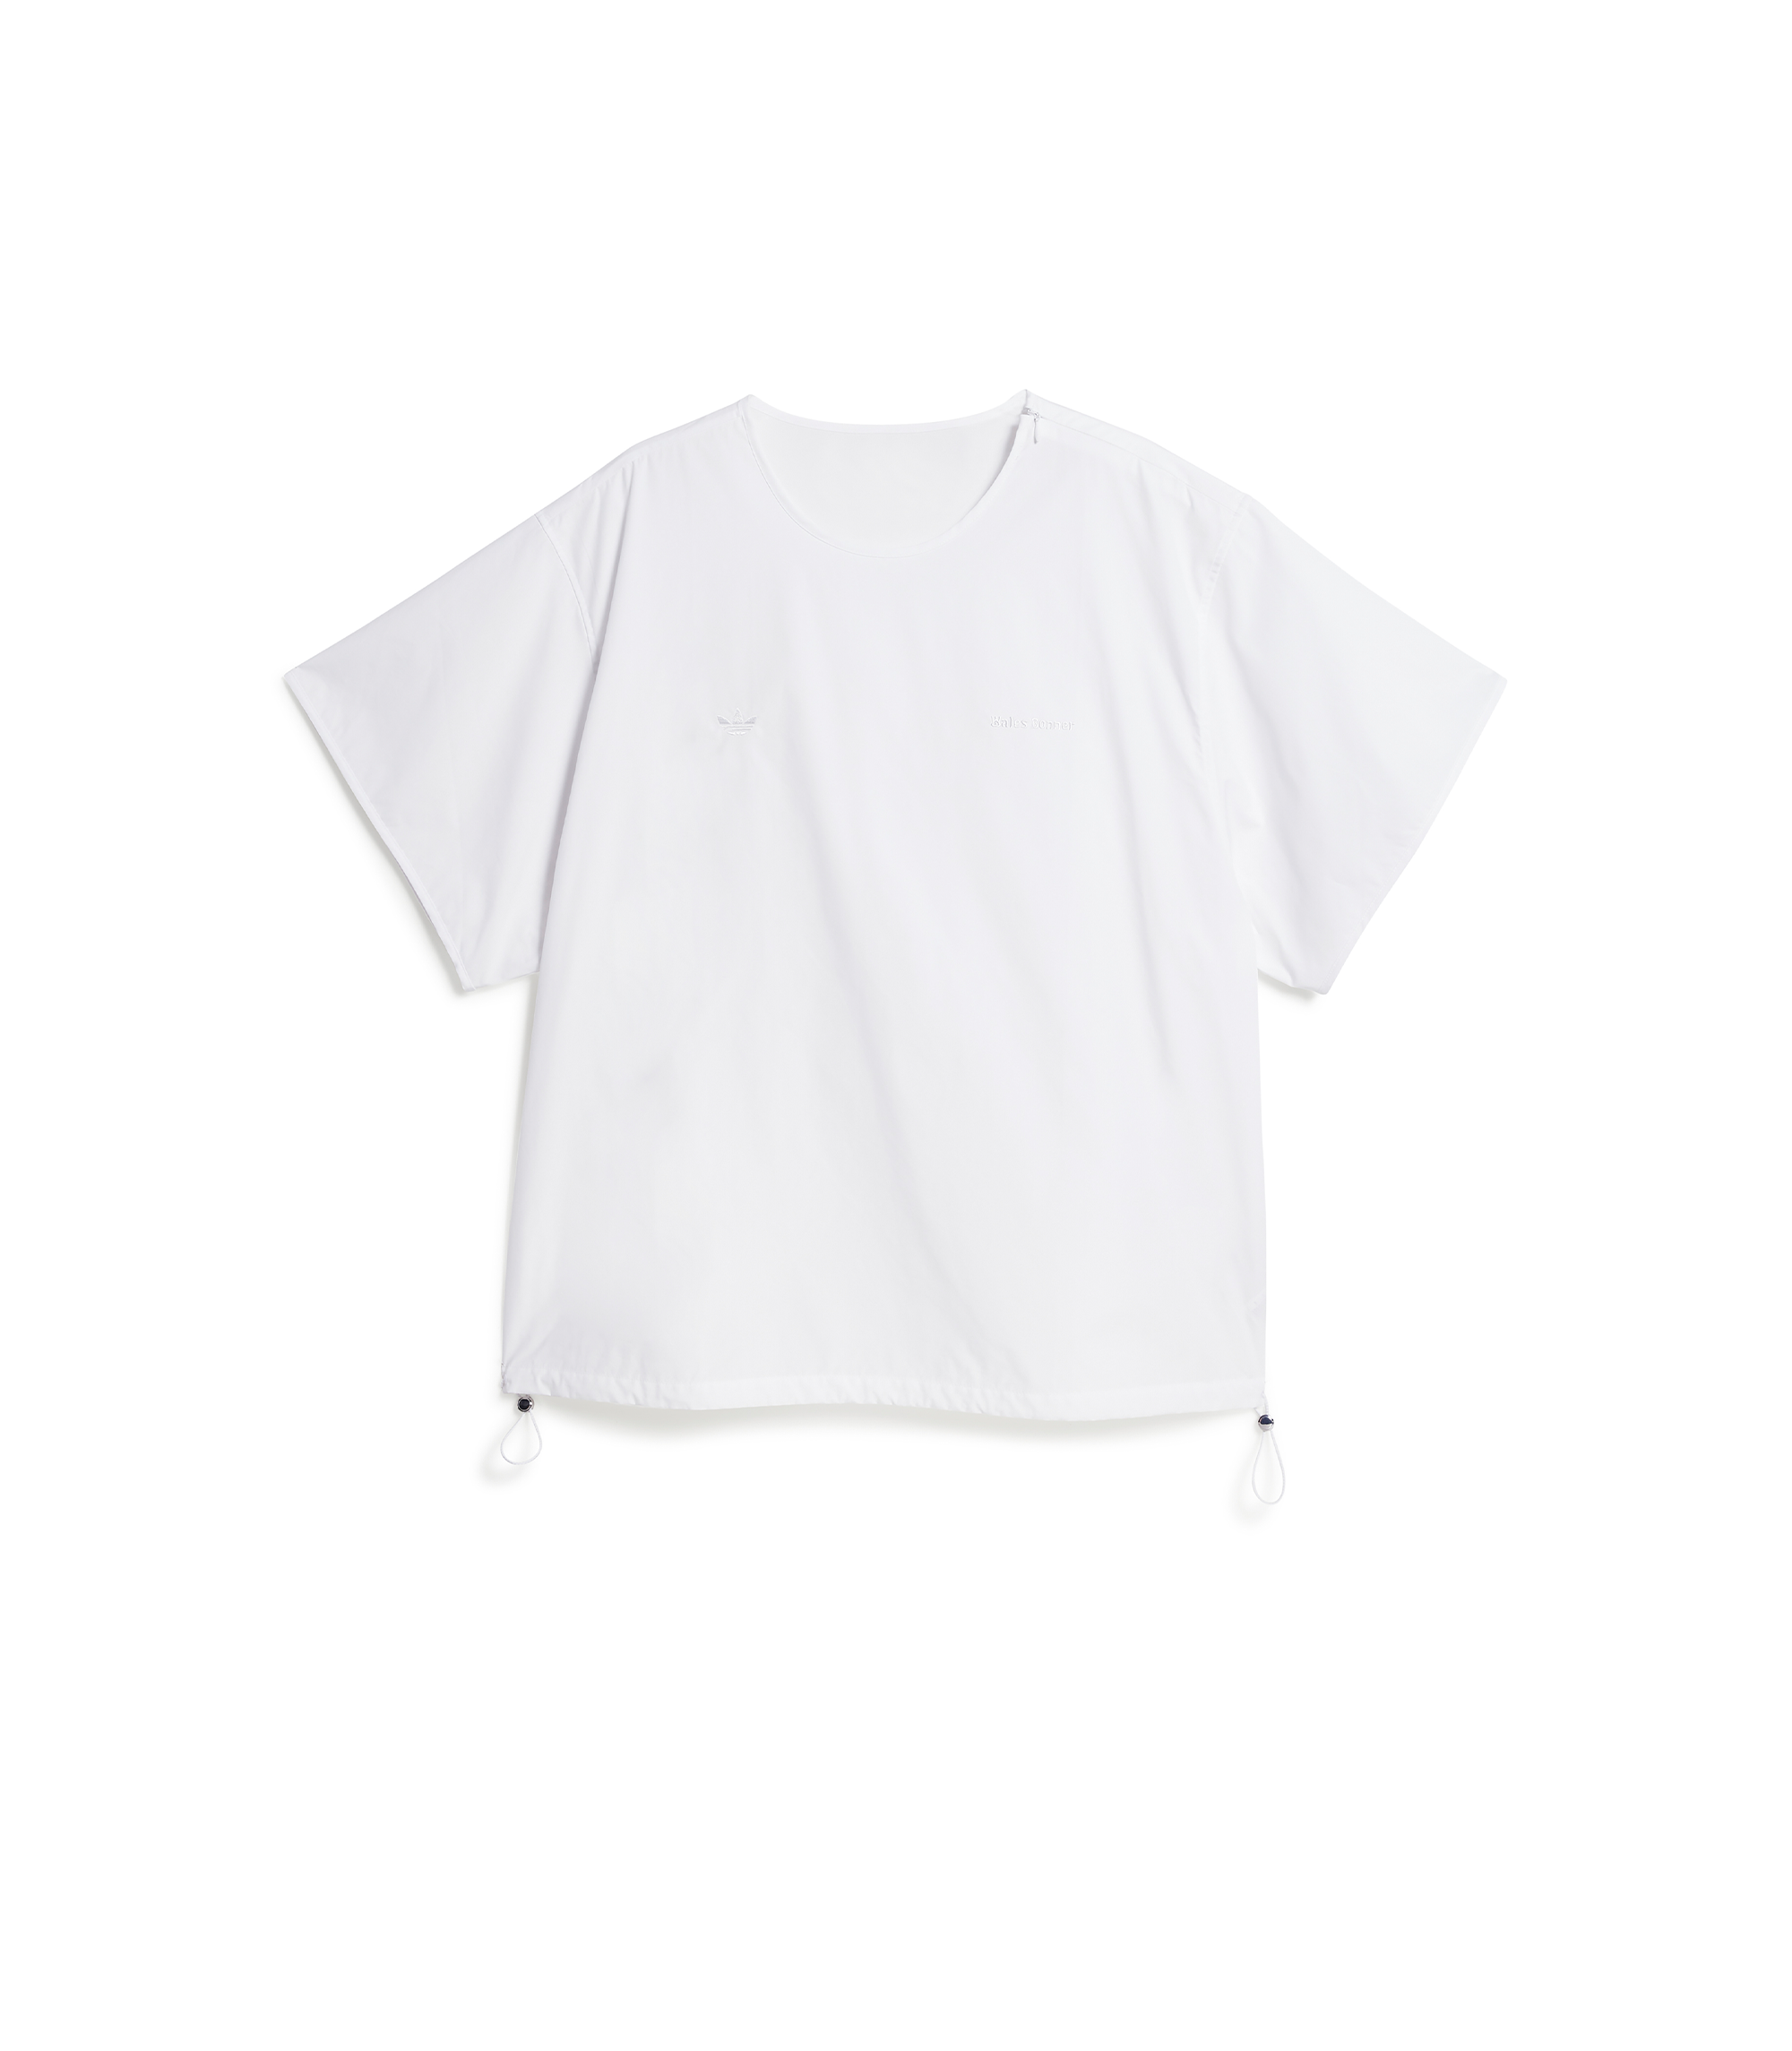 Wales Bonner Poplin T-Shirt - White